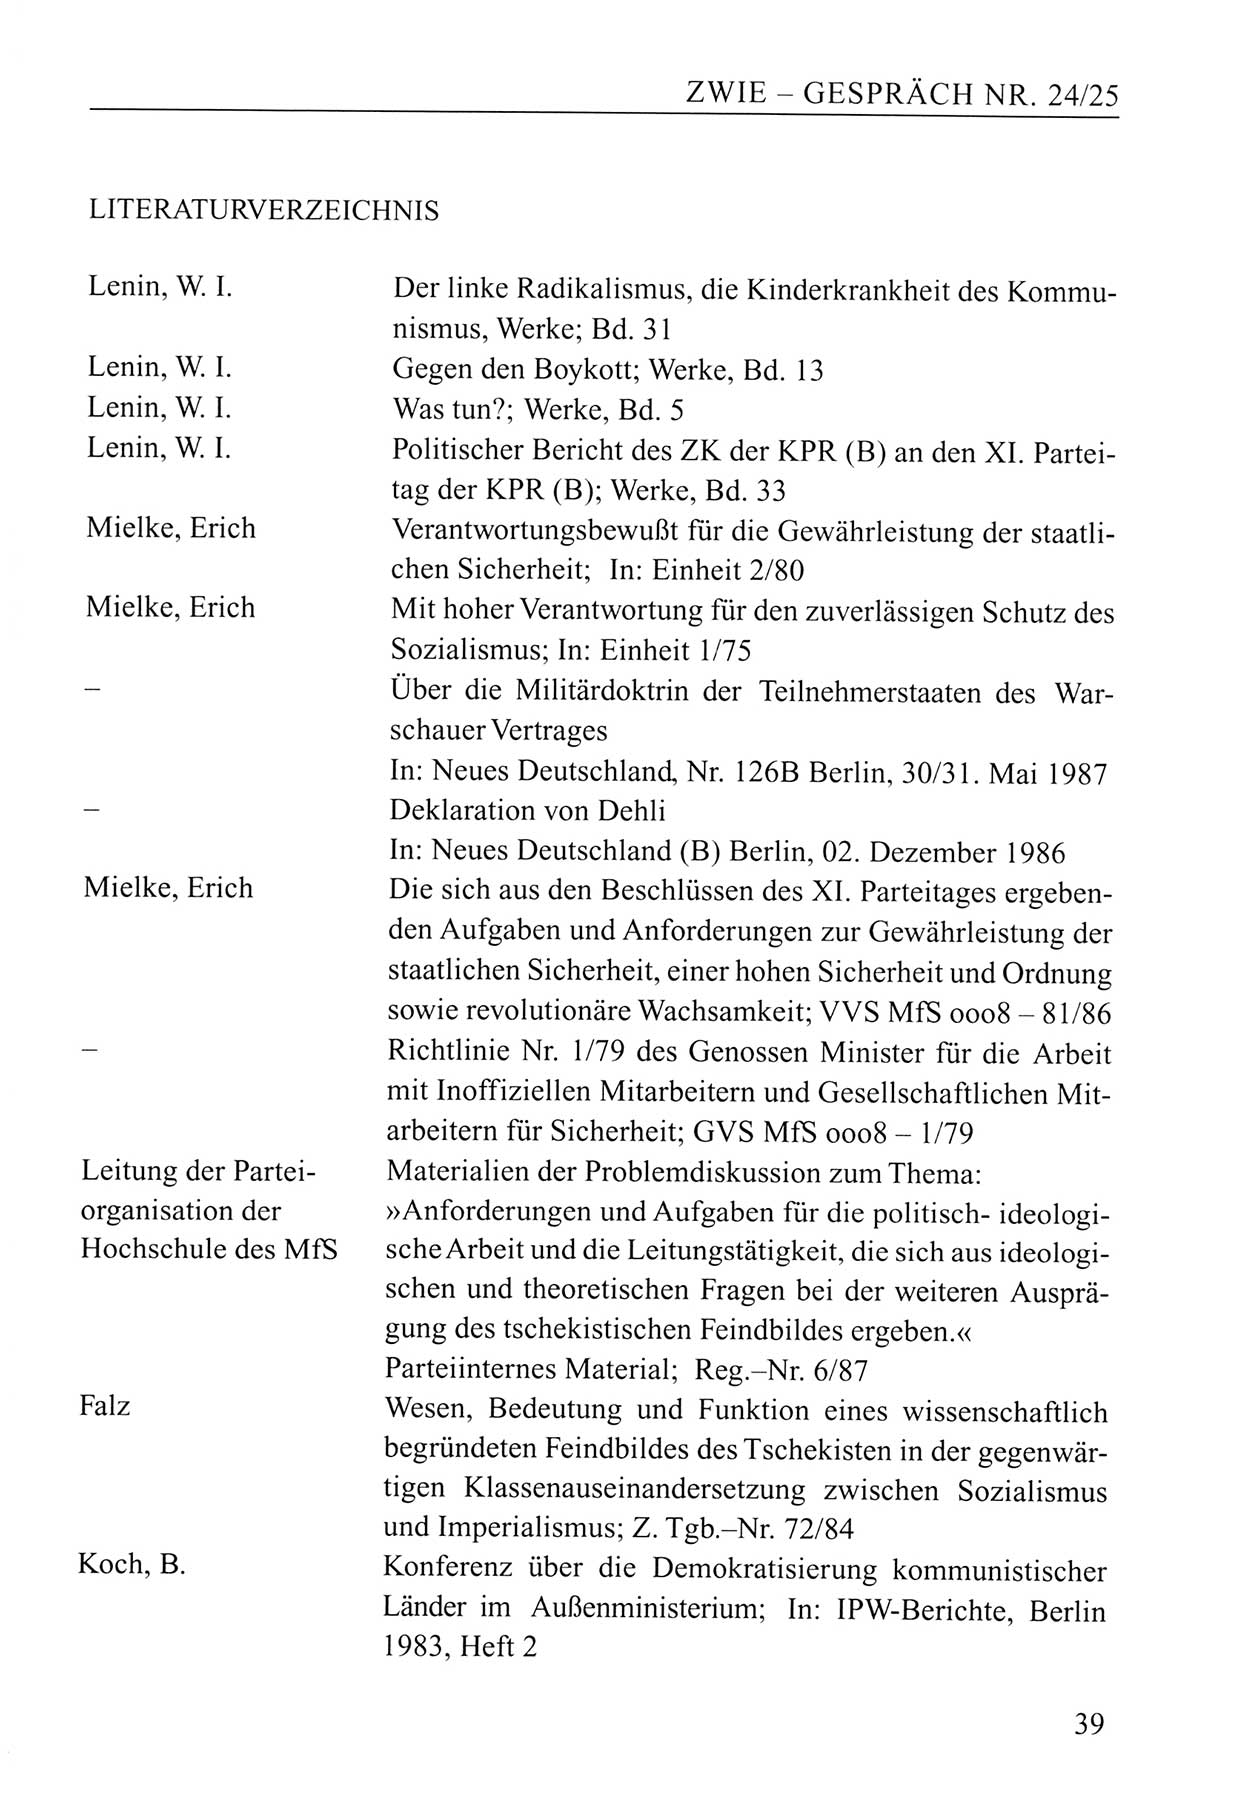 Zwie-Gespräch, Beiträge zum Umgang mit der Staatssicherheits-Vergangenheit [Deutsche Demokratische Republik (DDR)], Ausgabe Nr. 24/25, Berlin 1994, Seite 39 (Zwie-Gespr. Ausg. 24/25 1994, S. 39)